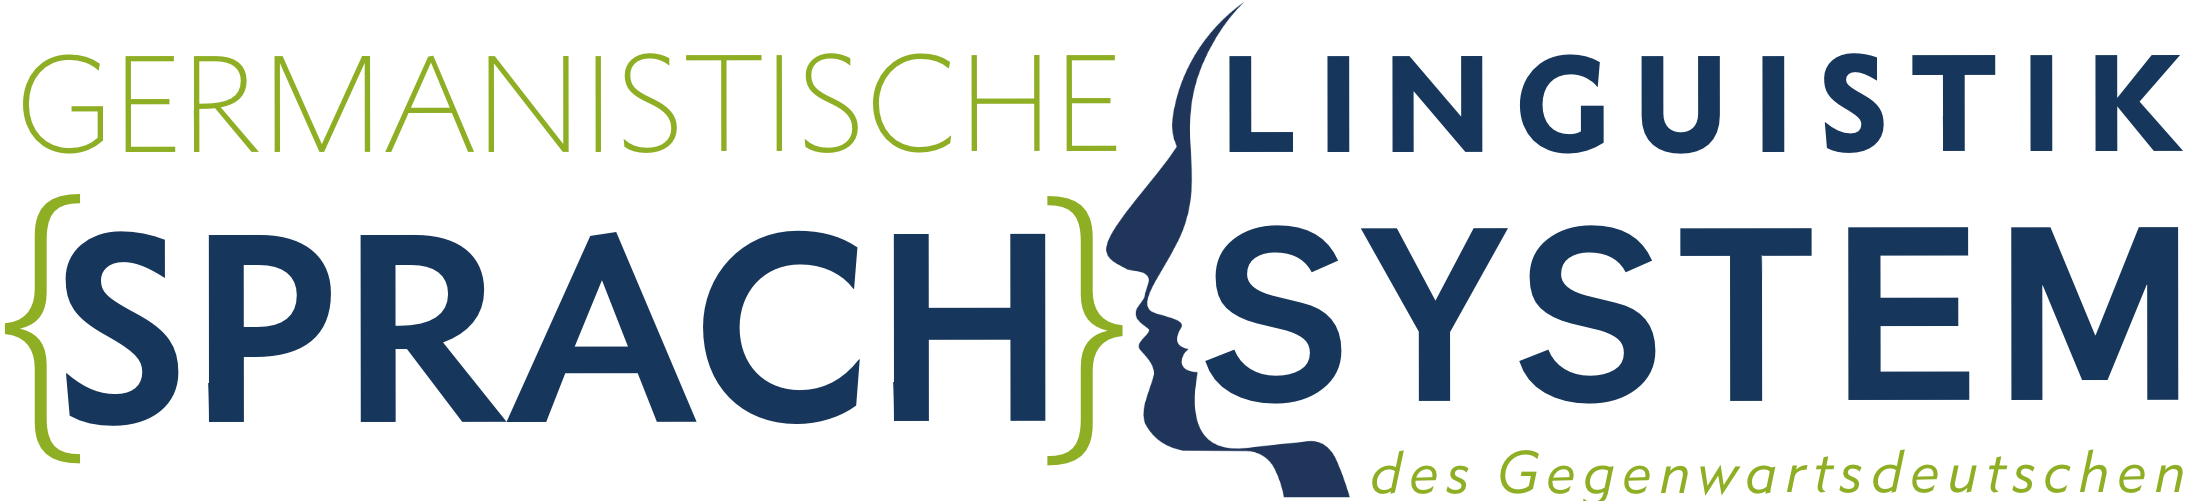 Logo Germanistische Linguistik: Sprachsystem